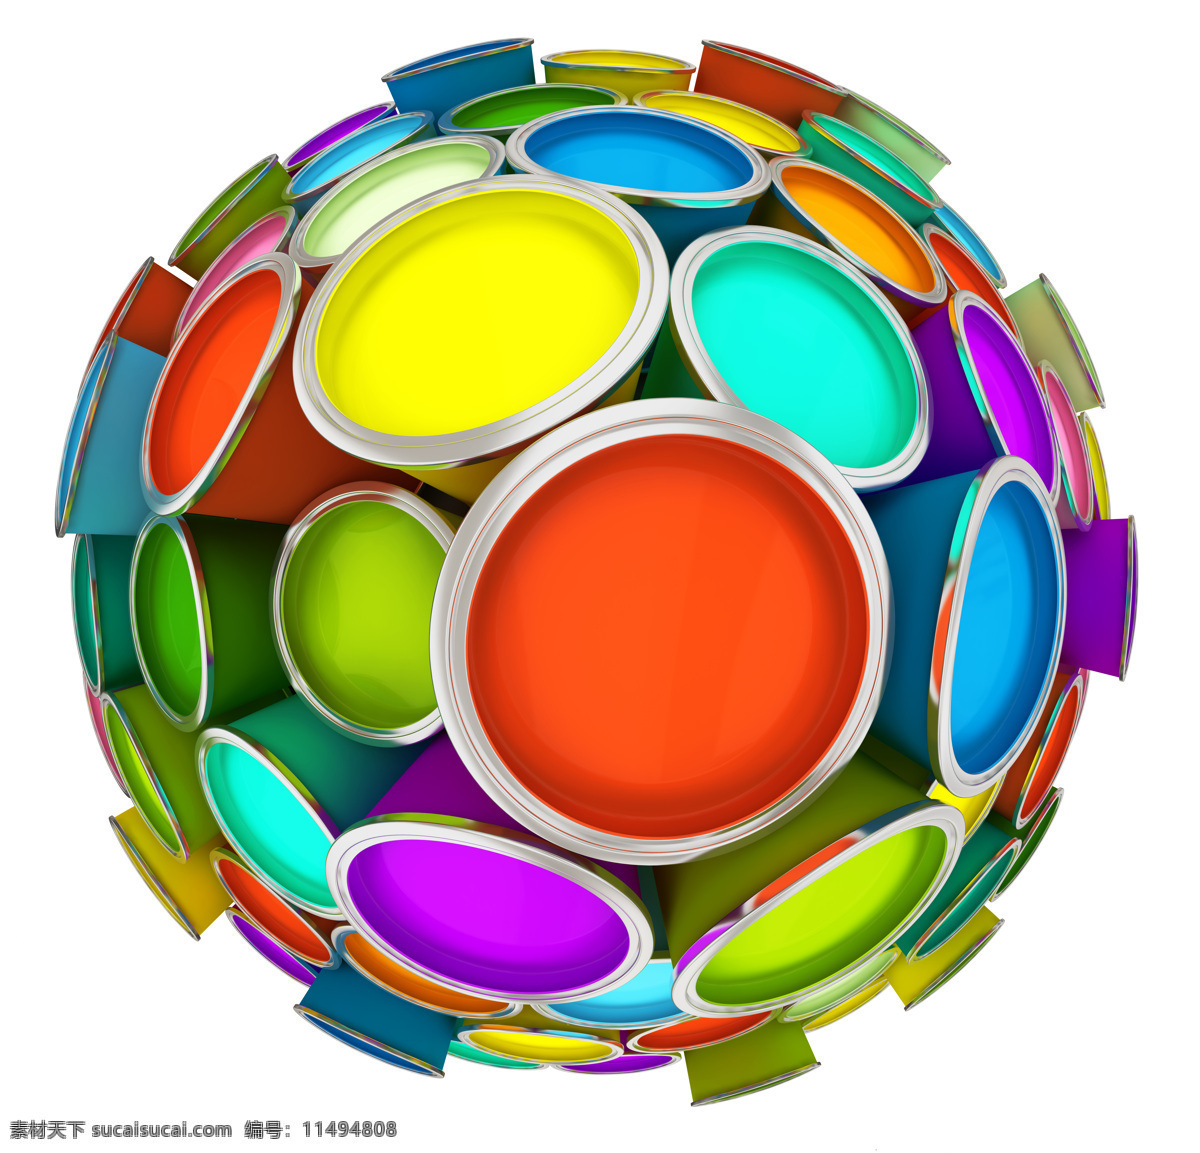 创意 颜料 球体 彩色球体 油漆桶 创意球体 球形 其他类别 现代科技